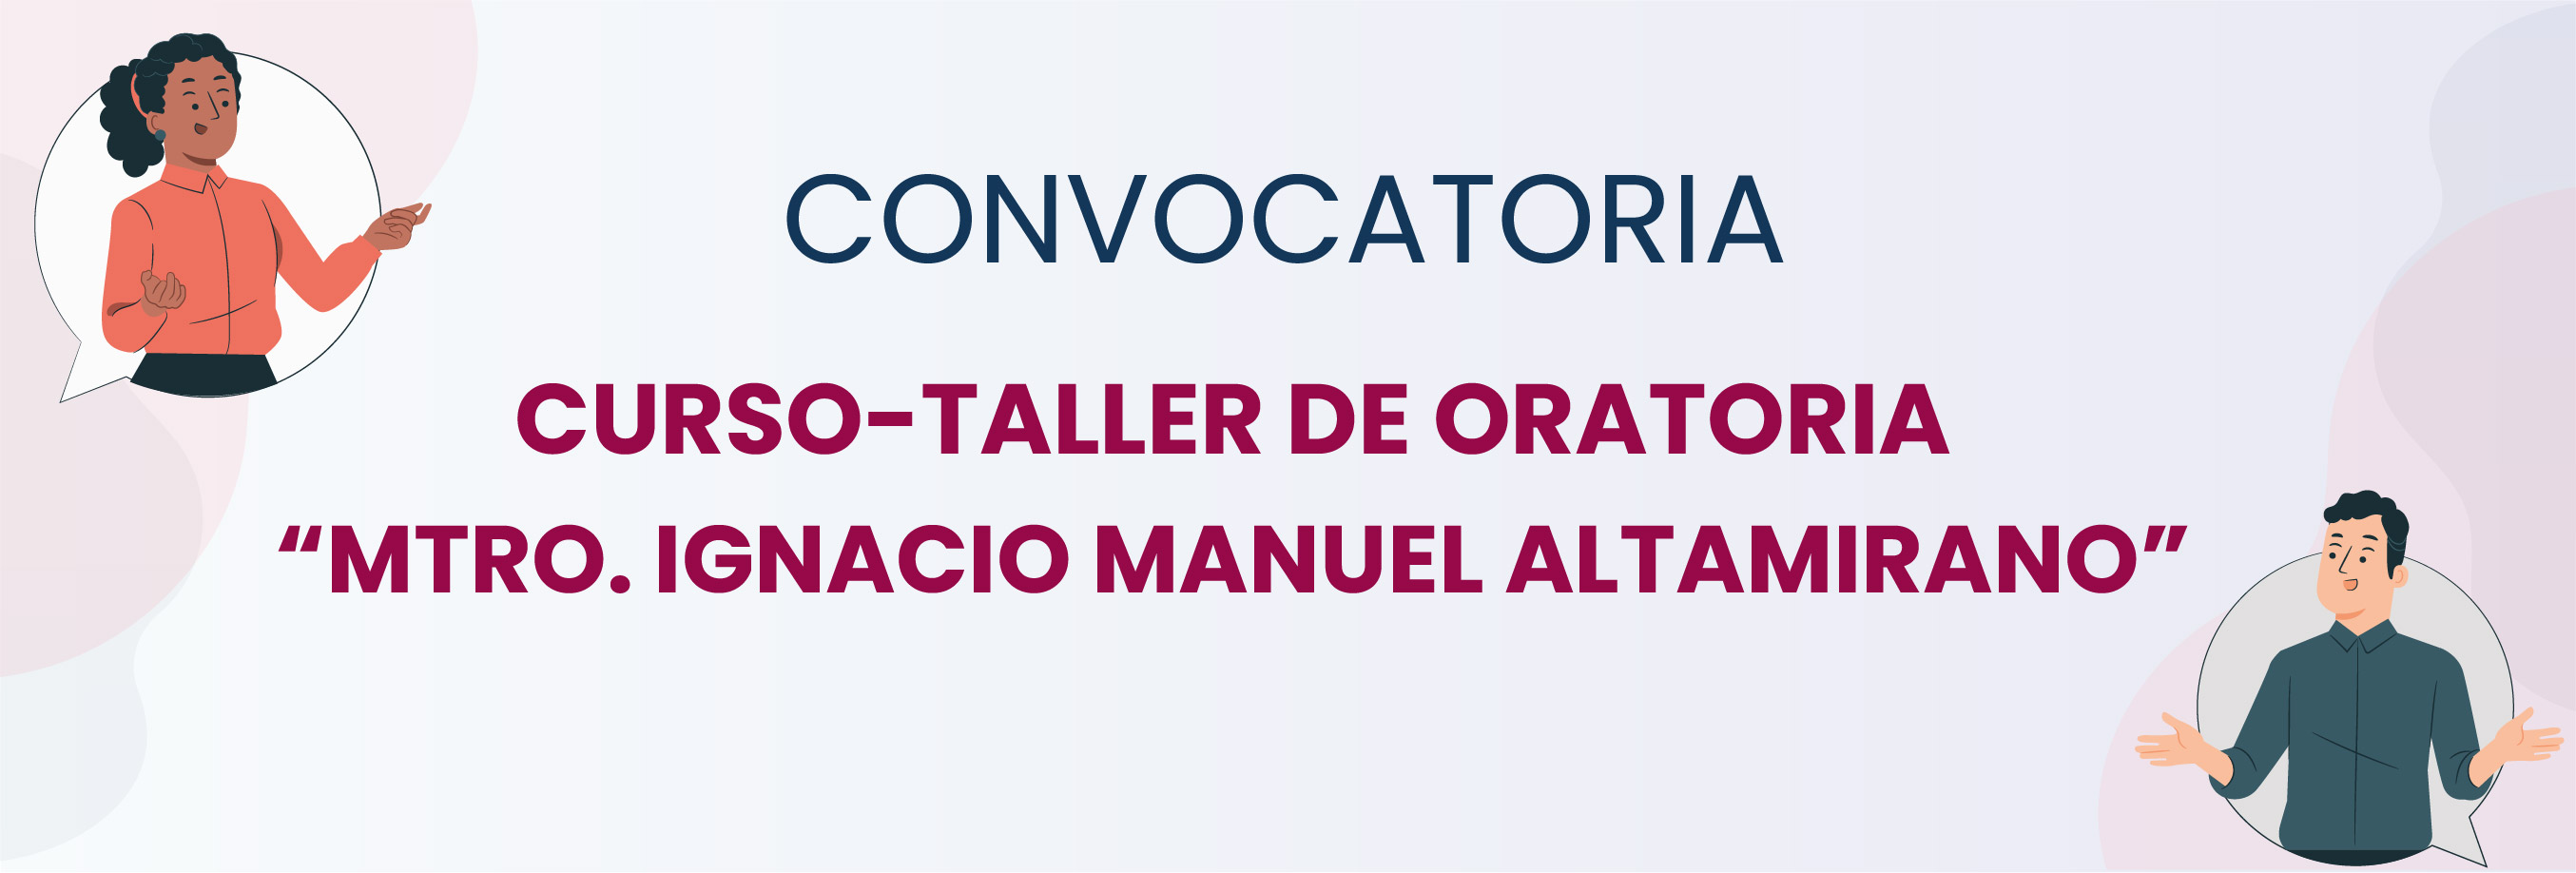 Convocatoria Al Curso-Taller De Oratoria “Mtro. Ignacio Manuel Altamirano”